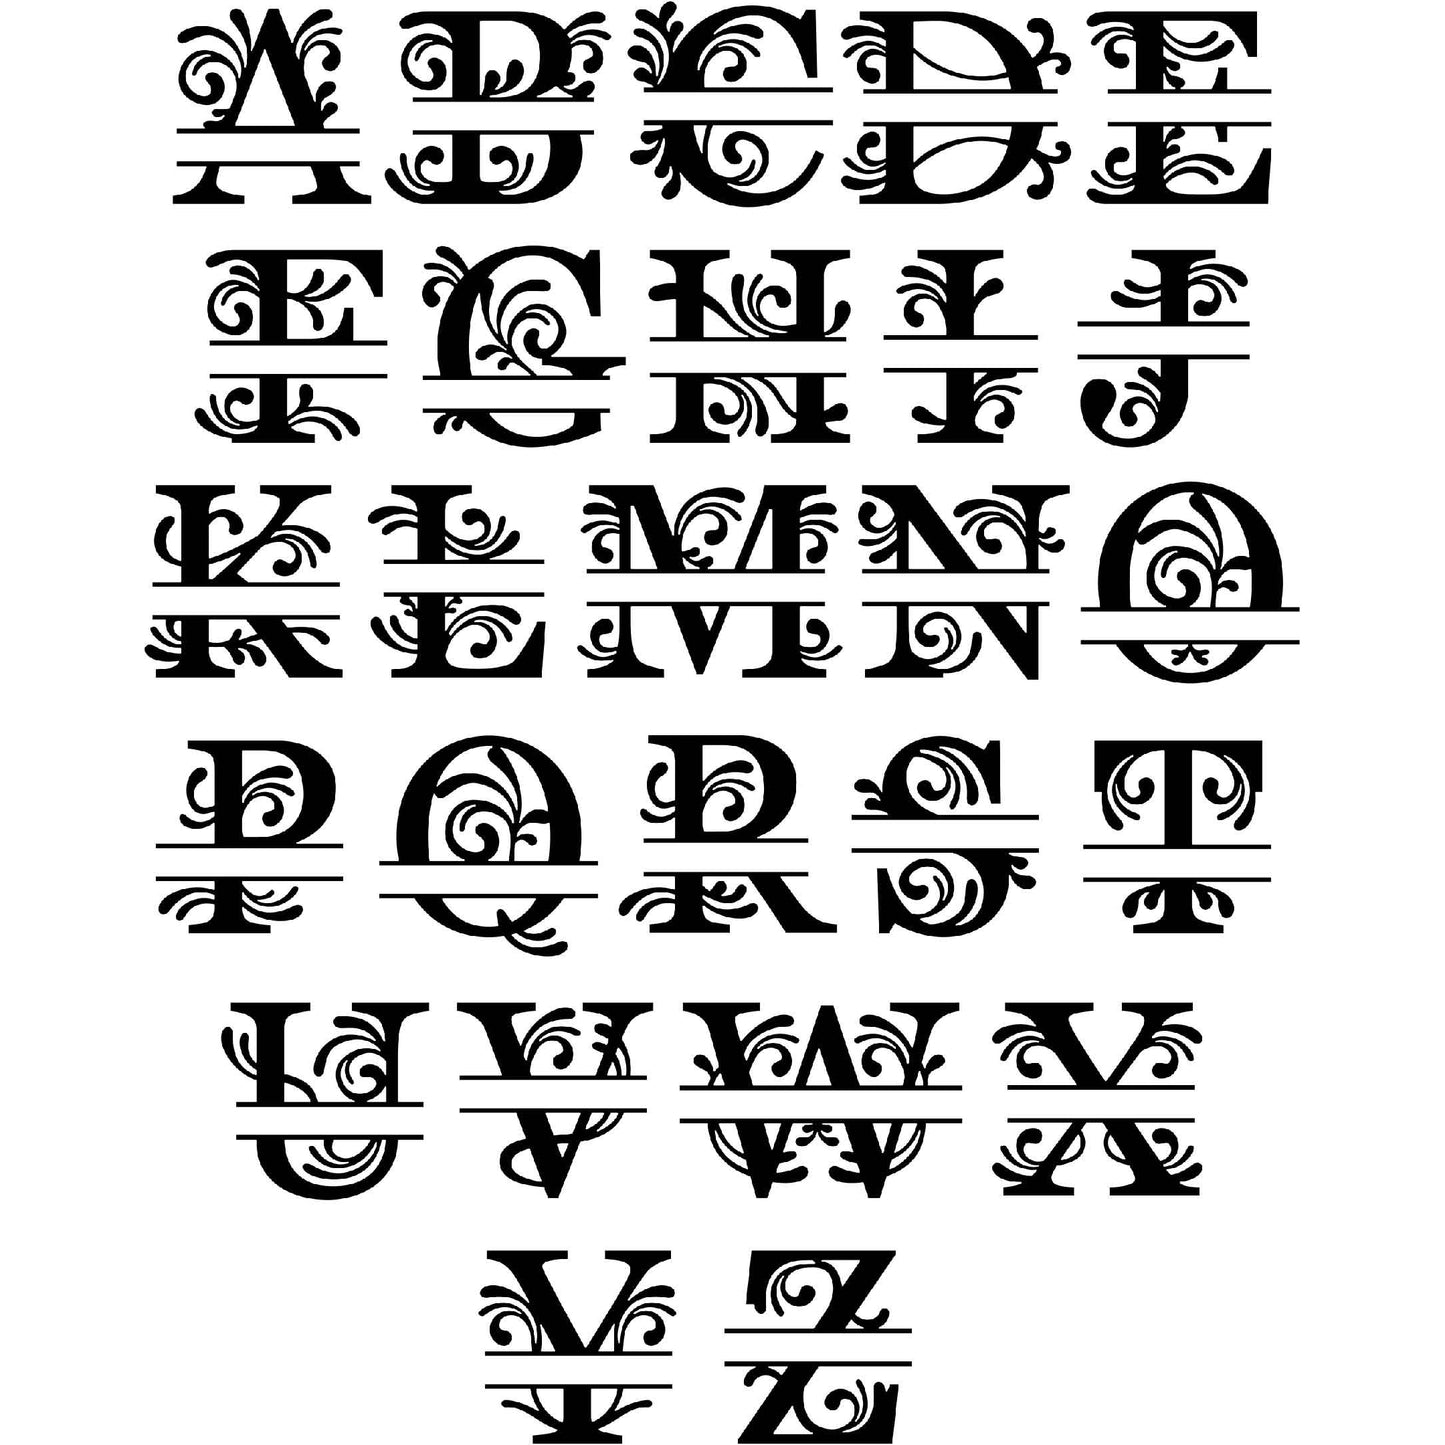 Letters Ornaments Split Regal Monogram-DXF files Cut Ready for CNC-DXFforCNC.com